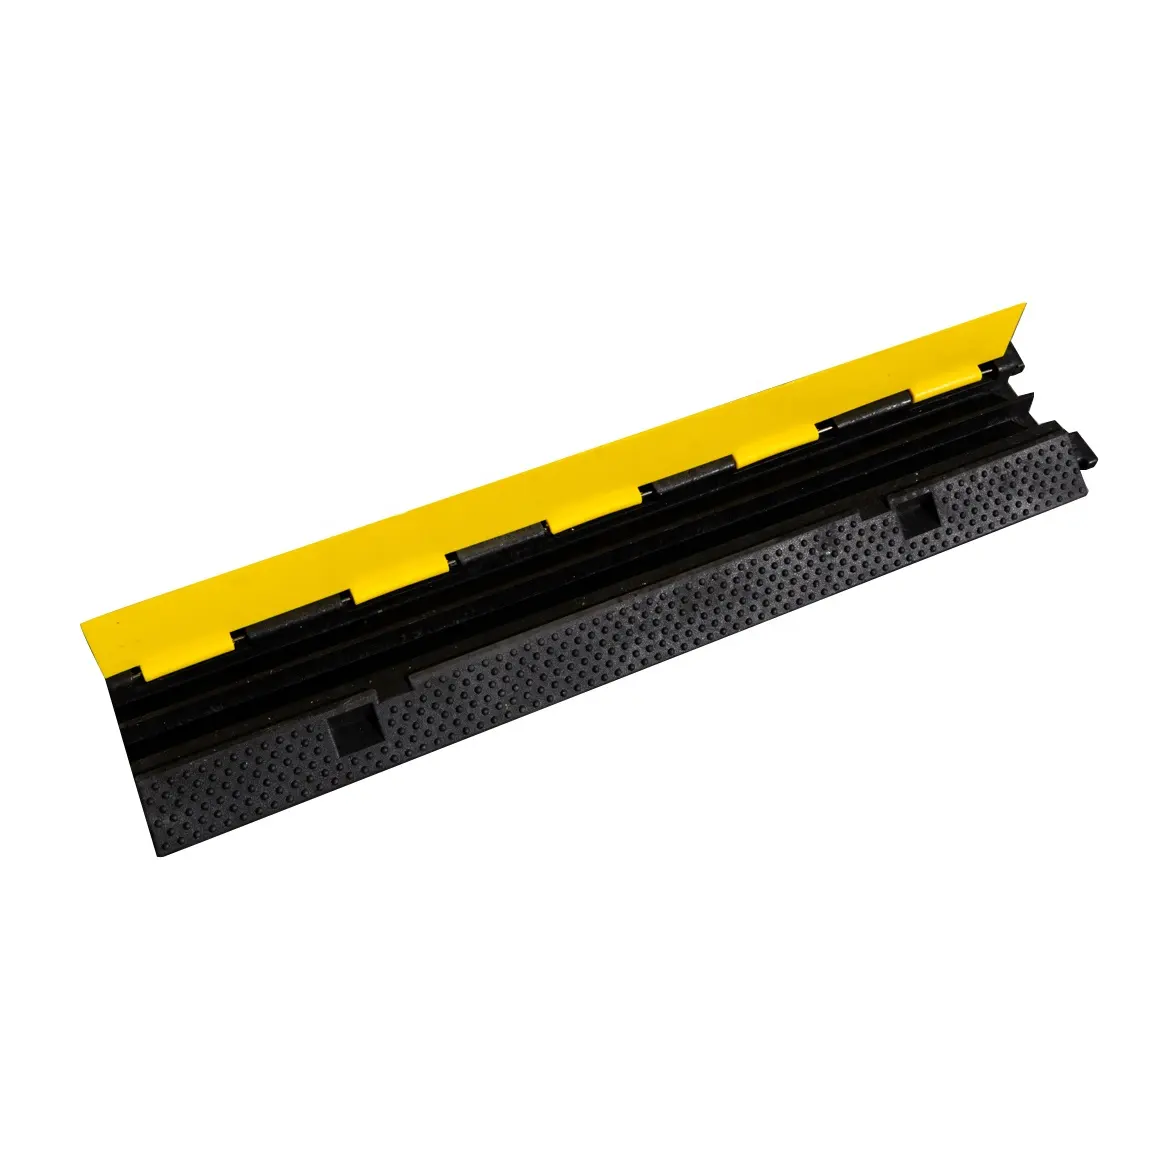 Protector de Cable de goma, para carretera, 2 canales, amarillo, 1000x230x50mm, venta al por mayor